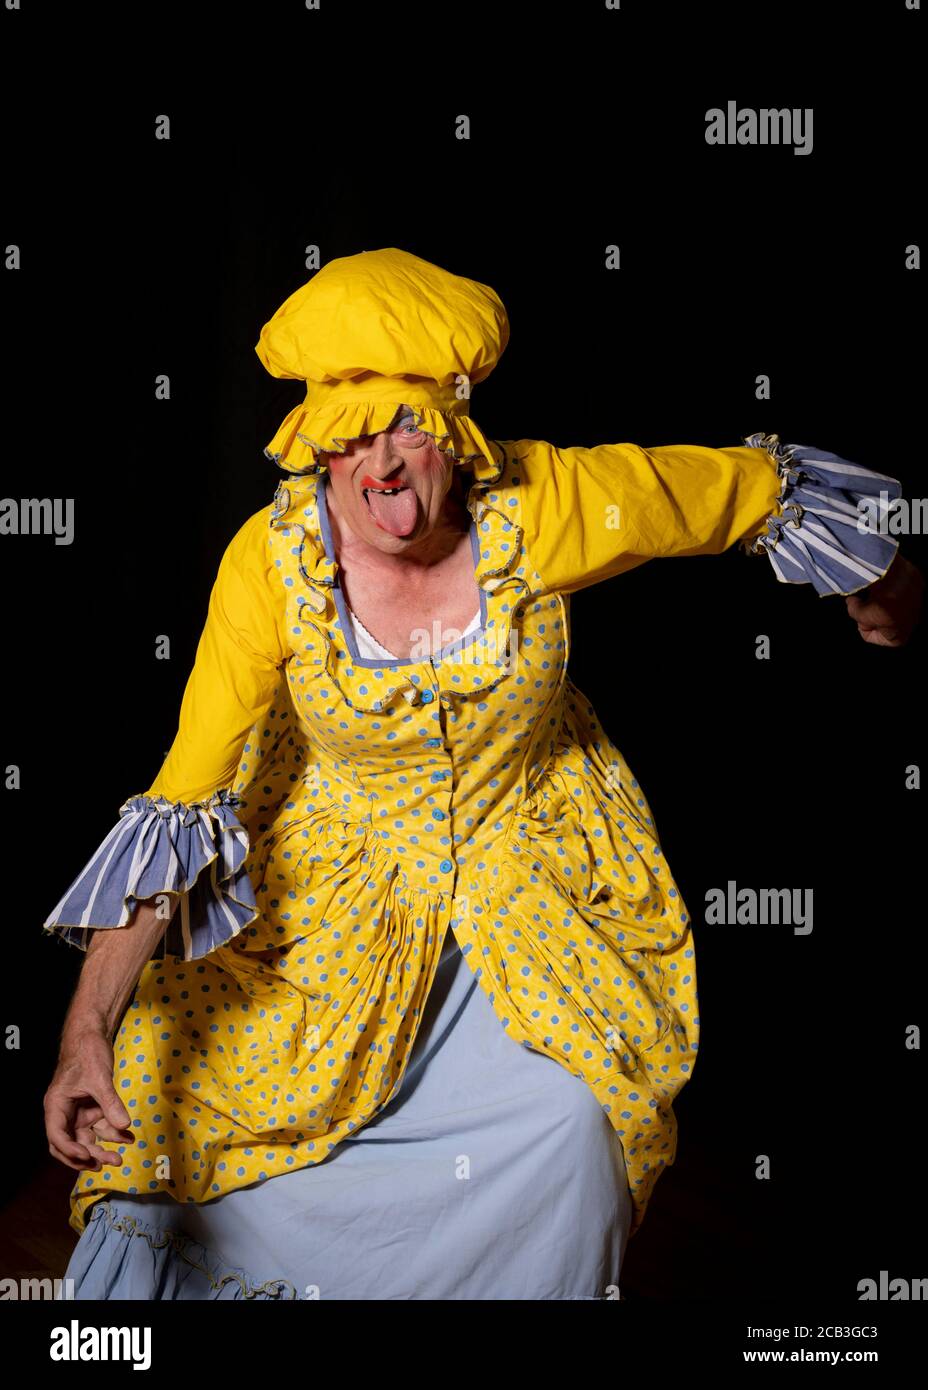 Une sœur laid dans une robe jaune vif et chapeau assorti lors d'une société dramatique amateur de production de Cendrillon. Banque D'Images